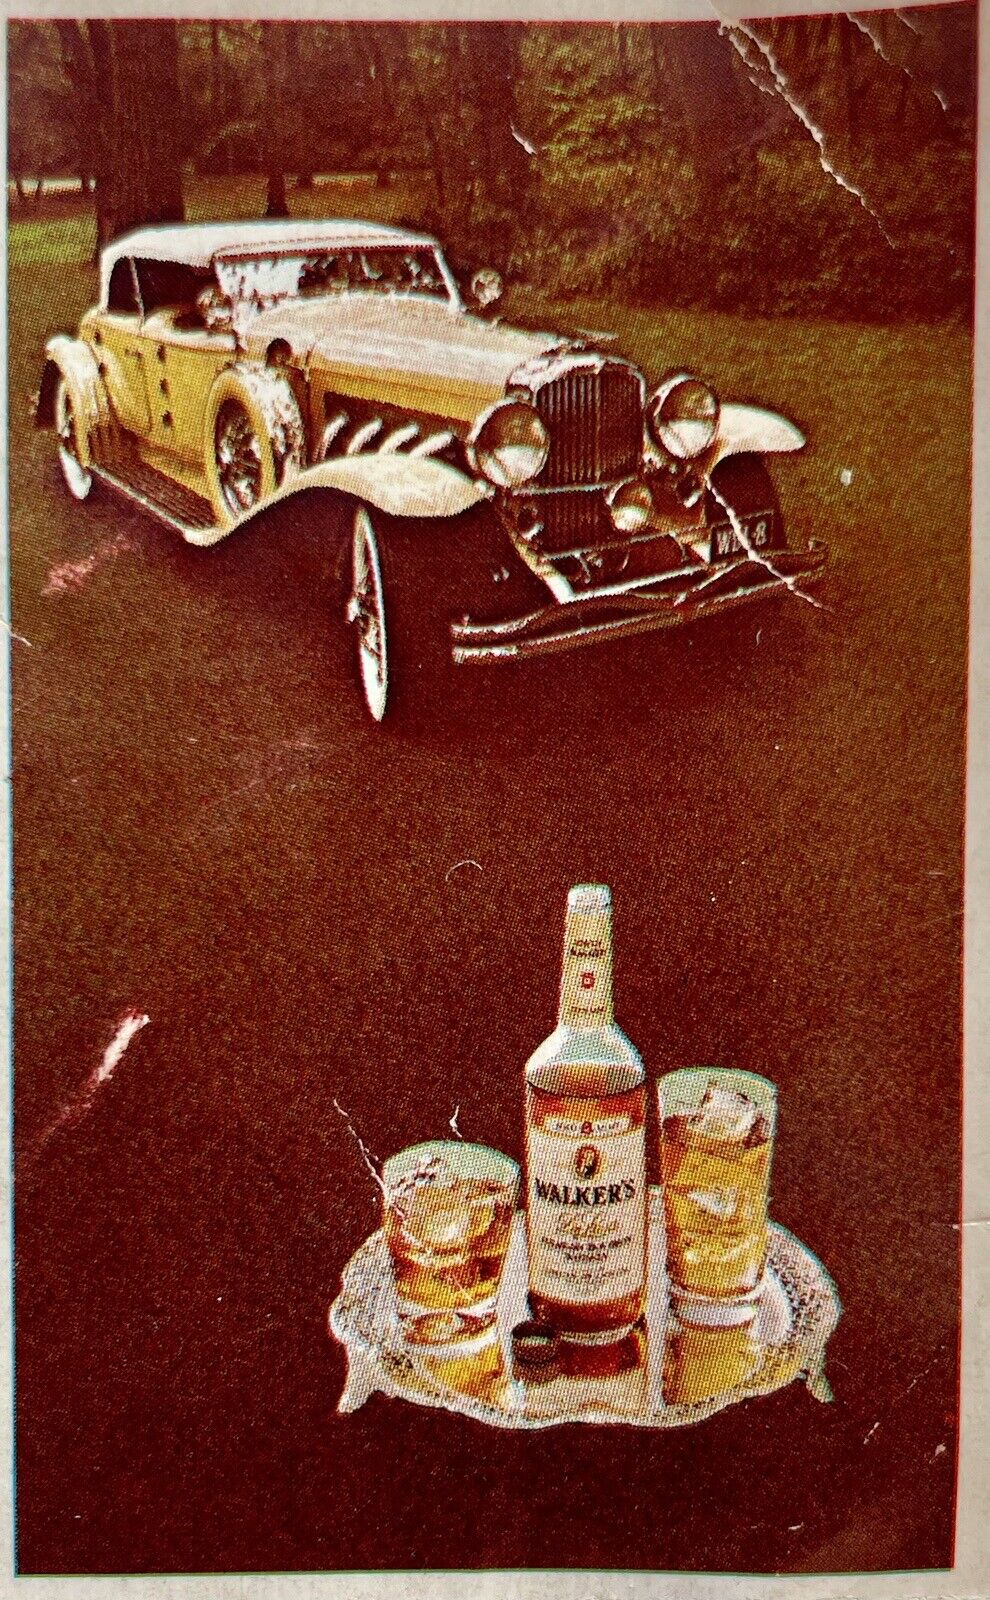 NEW 1972 Walker's Bourbon Whiskey Ad Holiday Promo Puzzle - 1930 Torpedo Phaeton